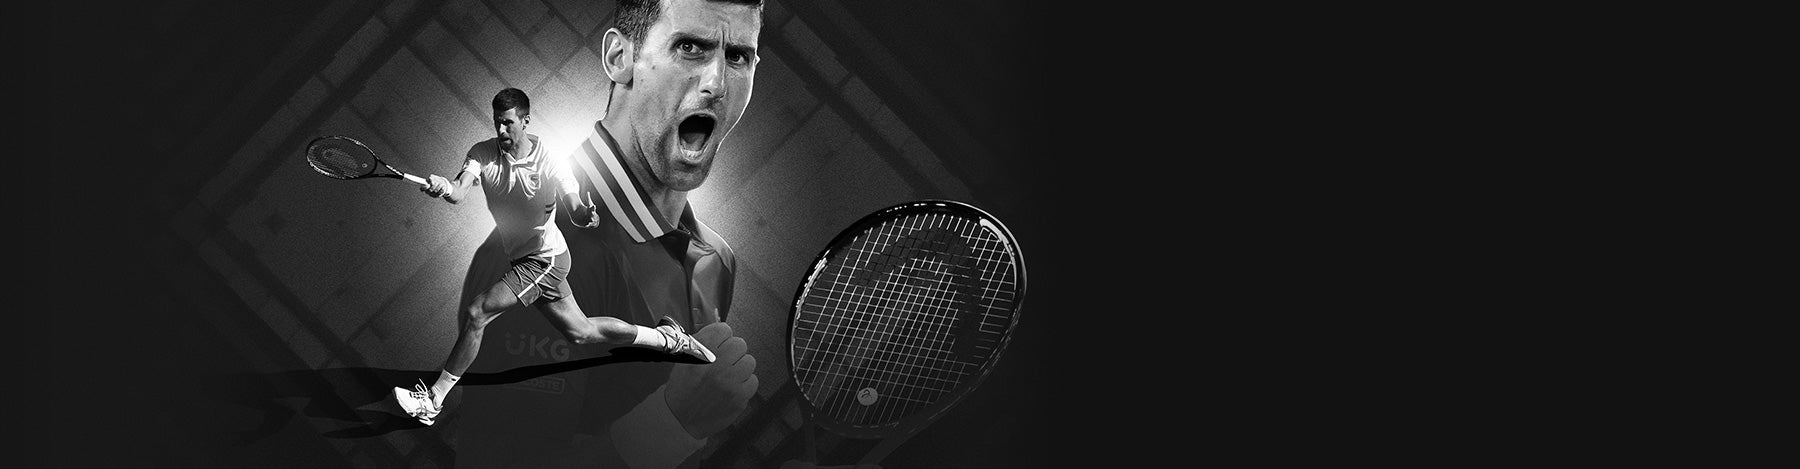 Novak Djokovic Tennis Gear